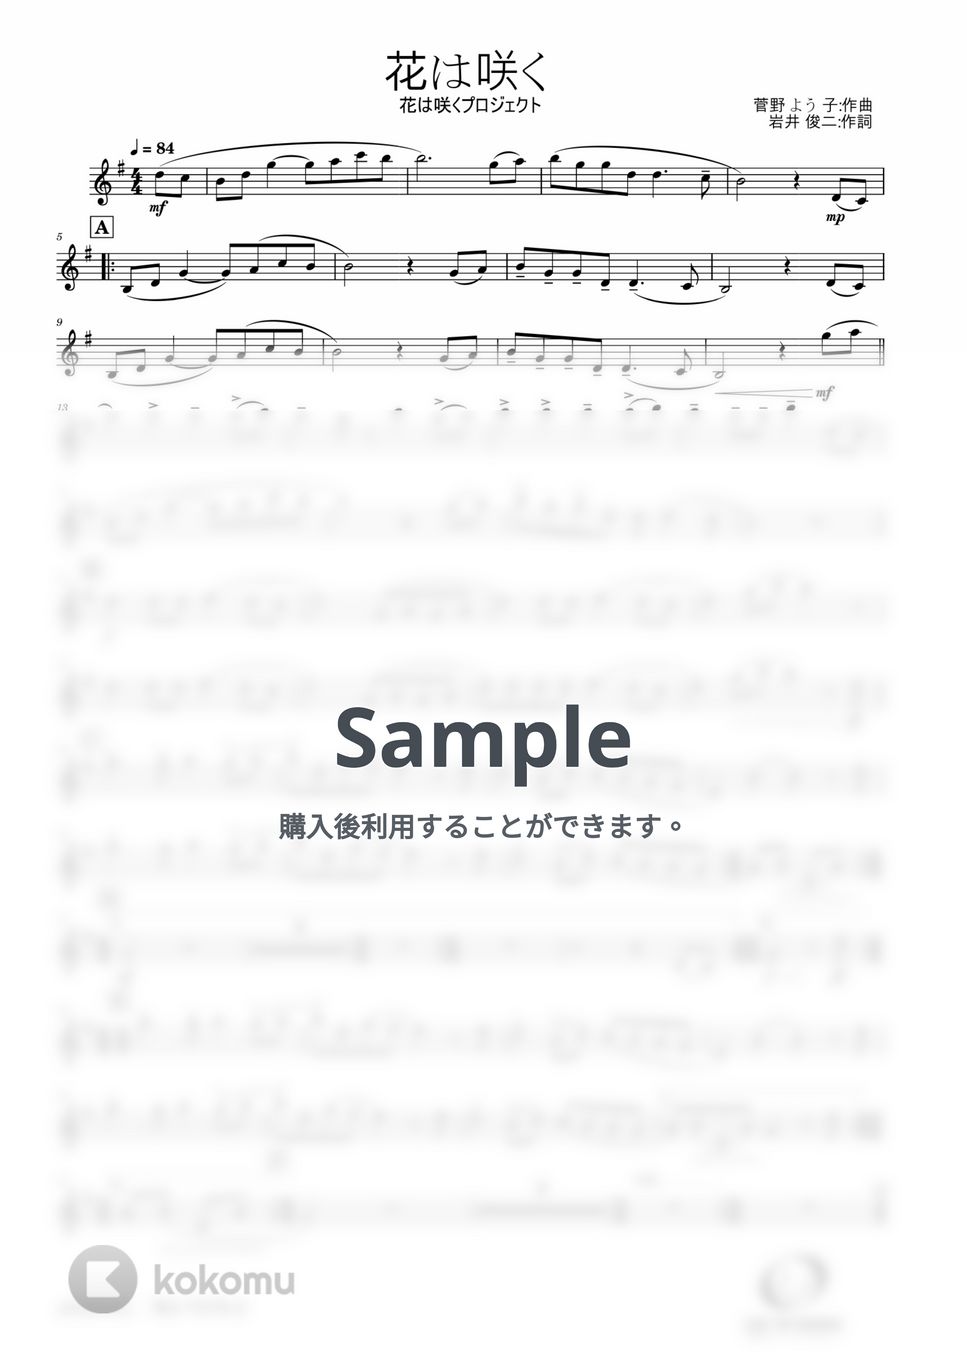 菅野 よう子 - 花は咲く (Trumpet Solo) by Windworld